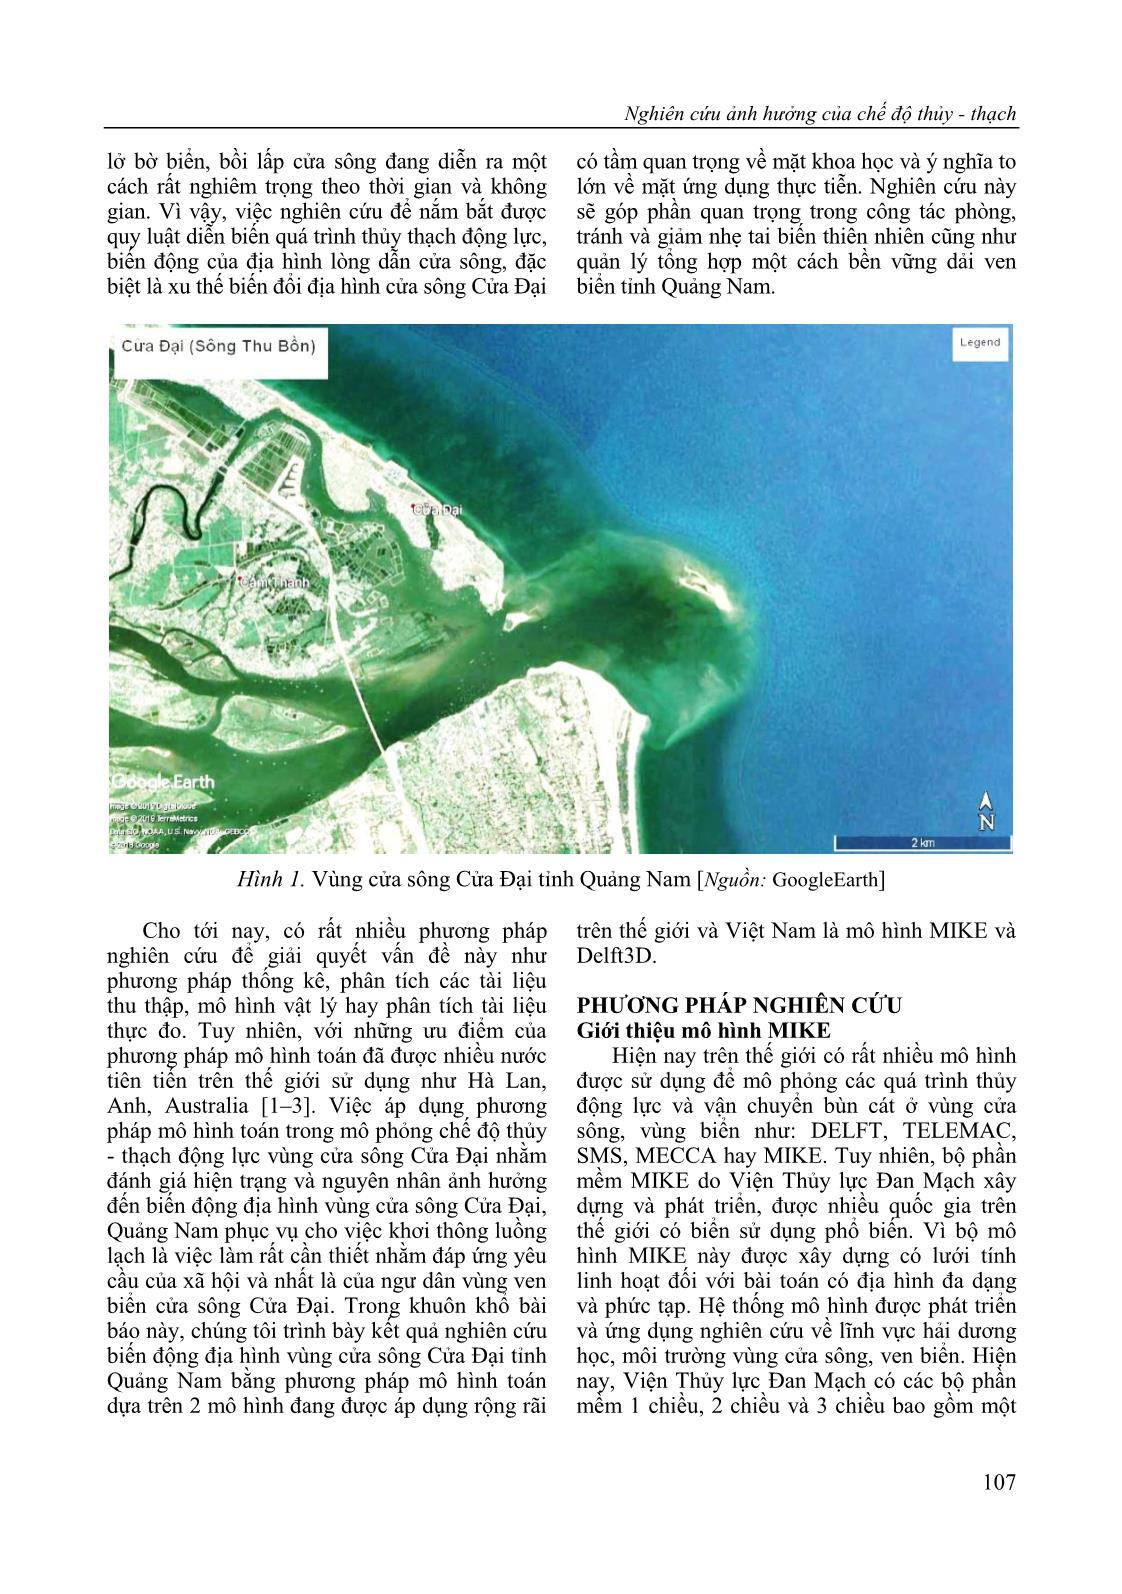 Nghiên cứu ảnh hưởng của chế độ thủy - Thạch động lực đến biến động địa hình vùng cửa sông Cửa Đại, tỉnh Quảng Nam trang 3